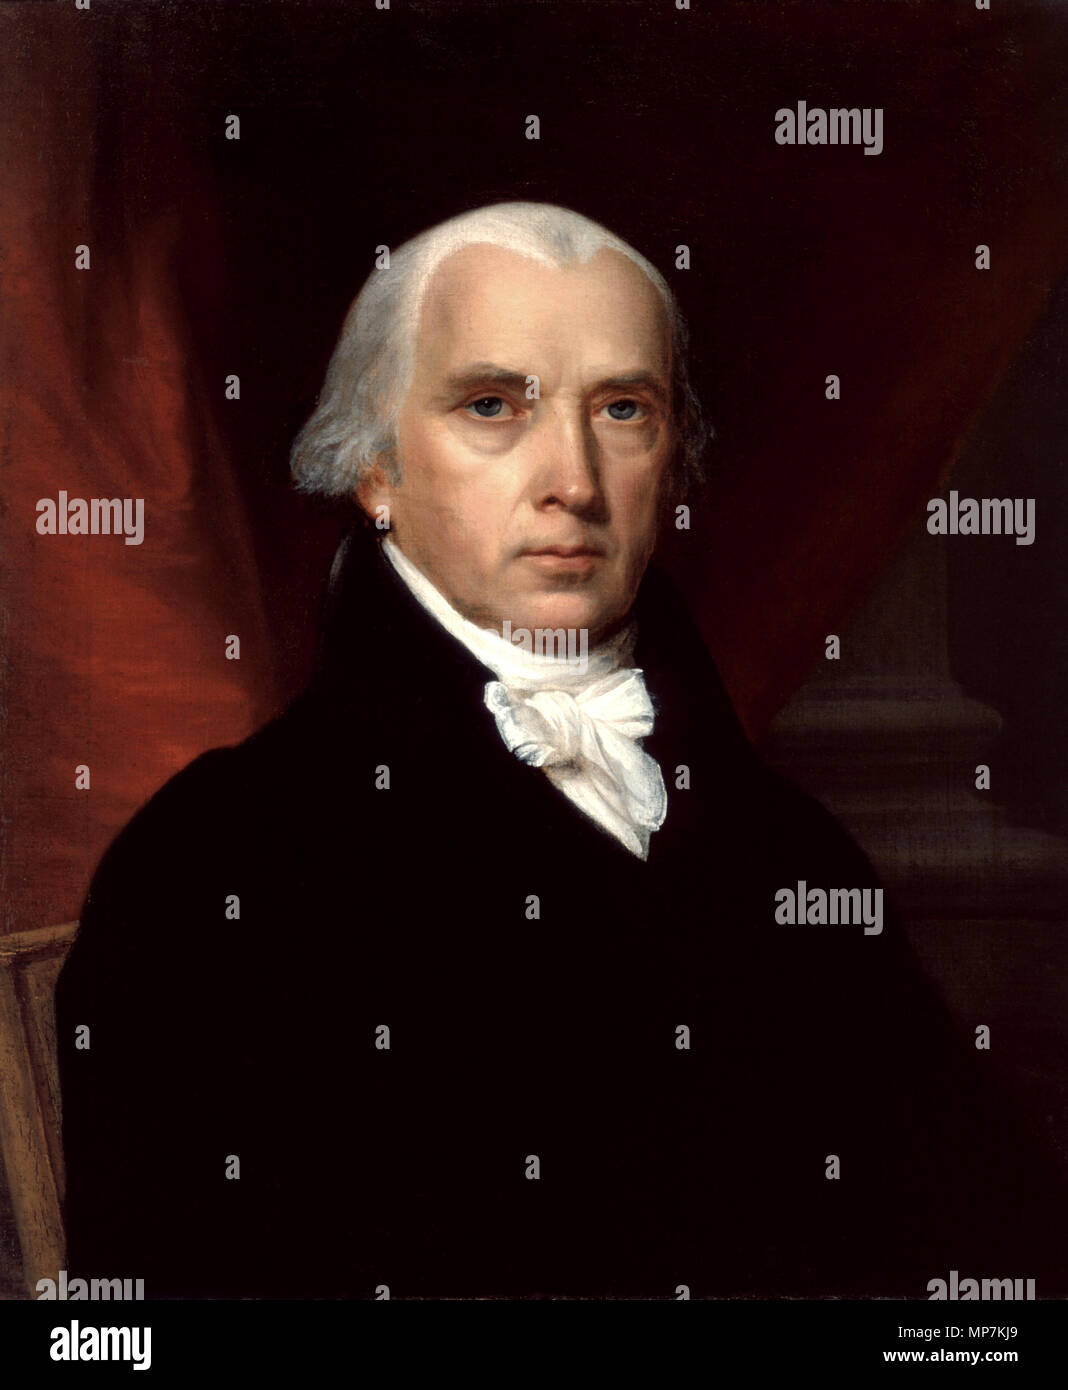 Retrato de James Madison, uno de los autores de los Documentos Federalistas,  y el cuarto presidente de los Estados Unidos Medio/Soporte: Óleo sobre  lienzo Medidas: 26 x 22 3/16 (66 x